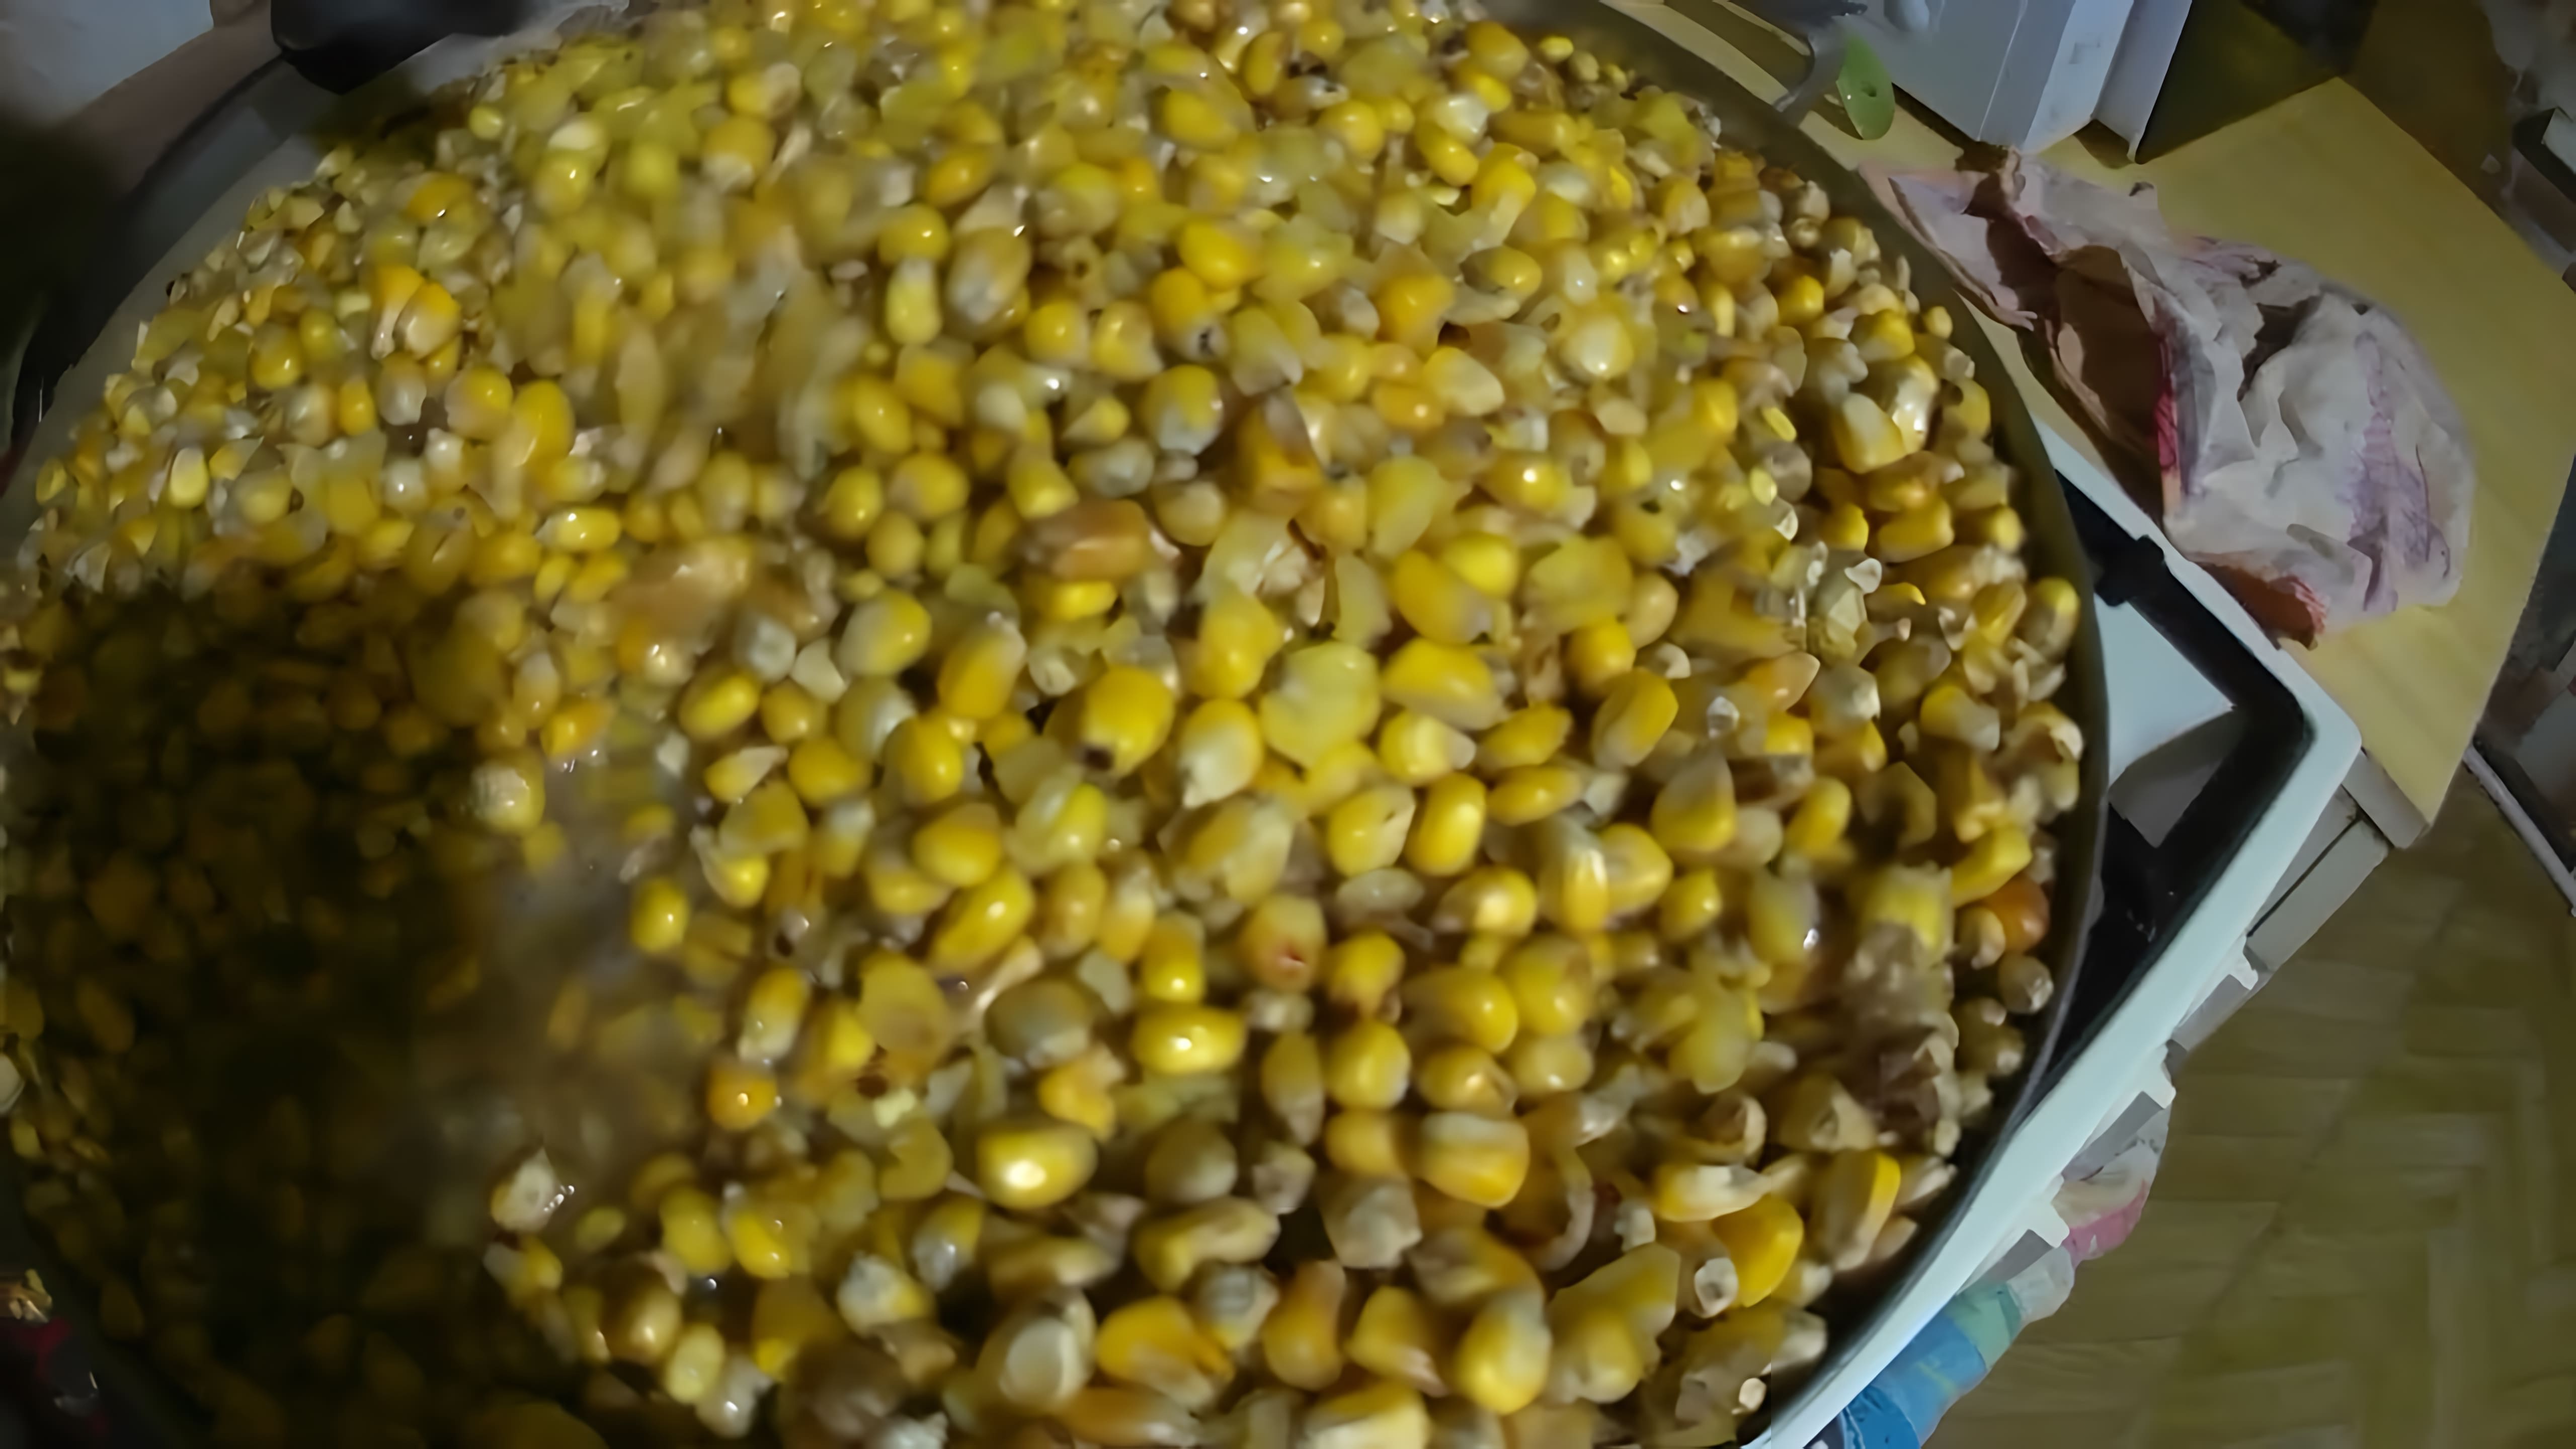 В данном видео демонстрируется процесс приготовления "пьяной" кукурузы для ловли сазана и амура